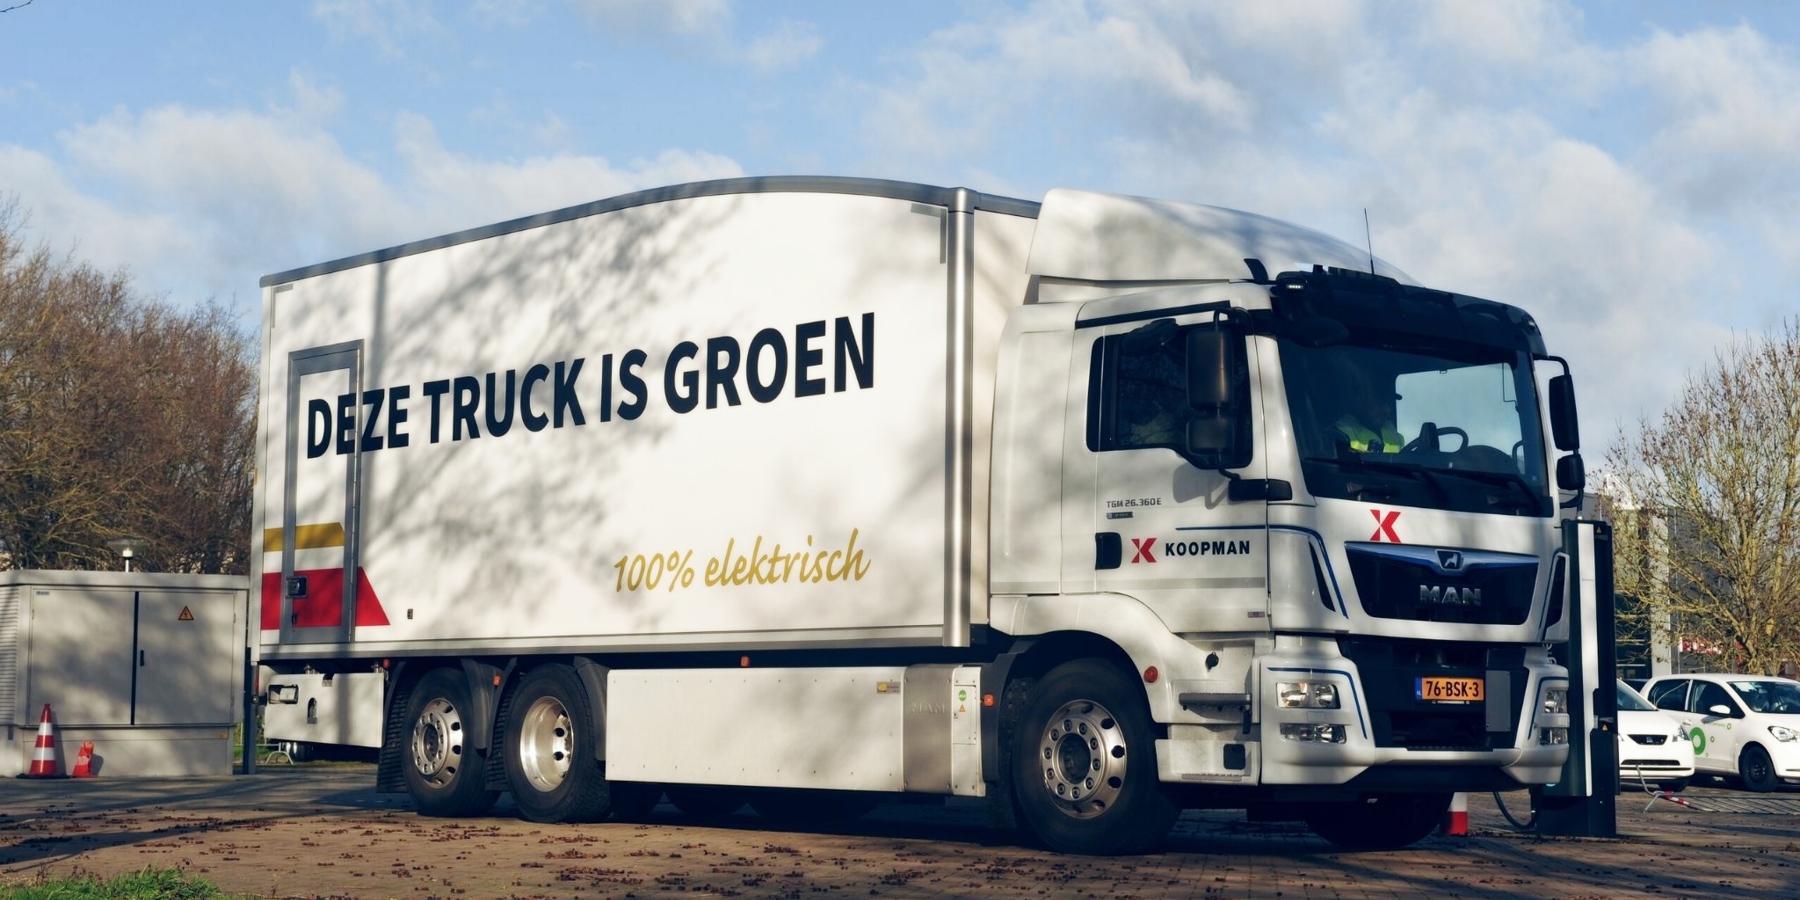 Koopman's greenest truck